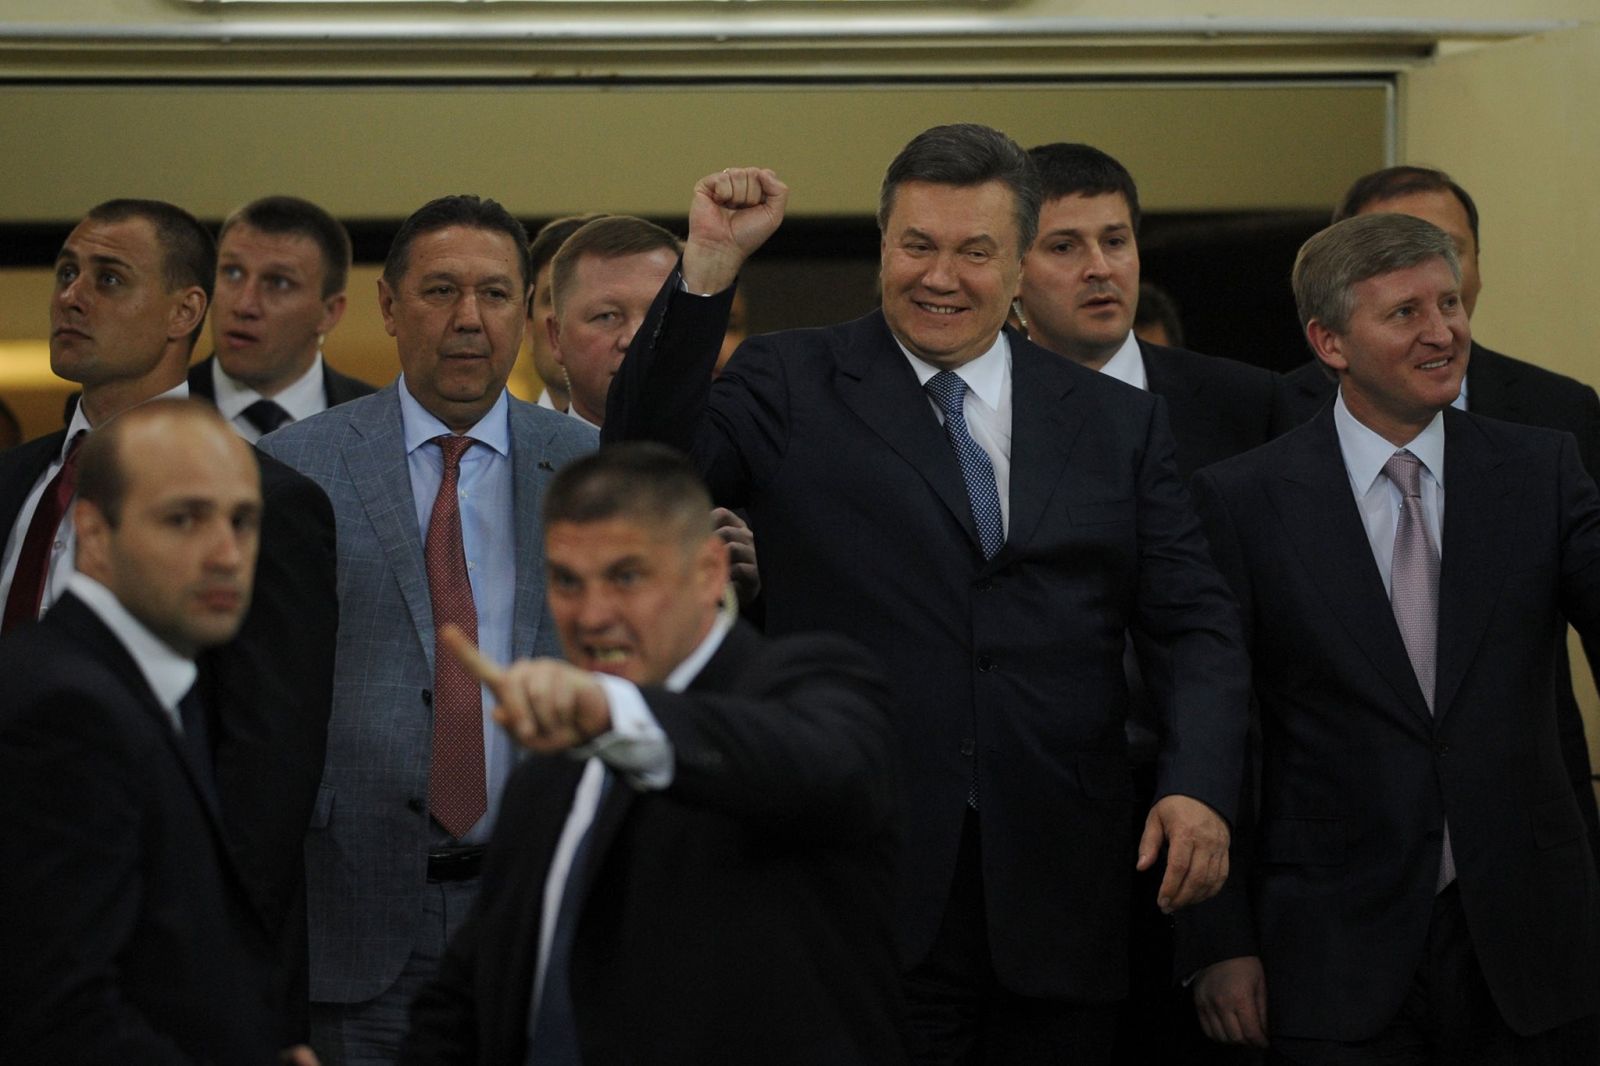 Янукович на стадионе «Металлист» в мае 2013 года. Фото: Дмитрий Неймырок / МедиаПорт